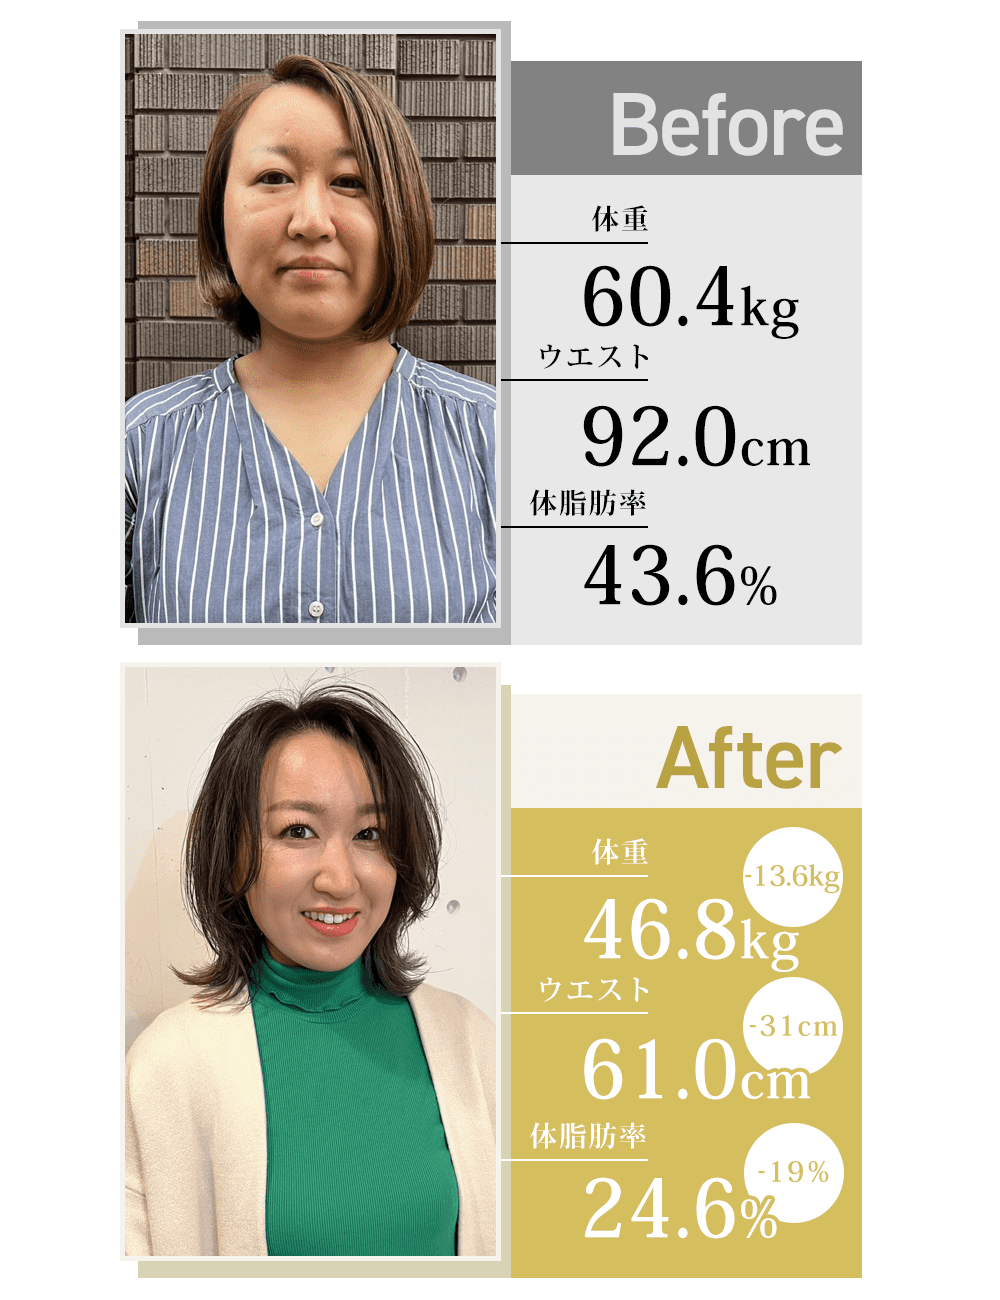 30代女性がオンラインパーソナルトレーニングで-13.6kg痩せた女性のビフォーアフター詳細